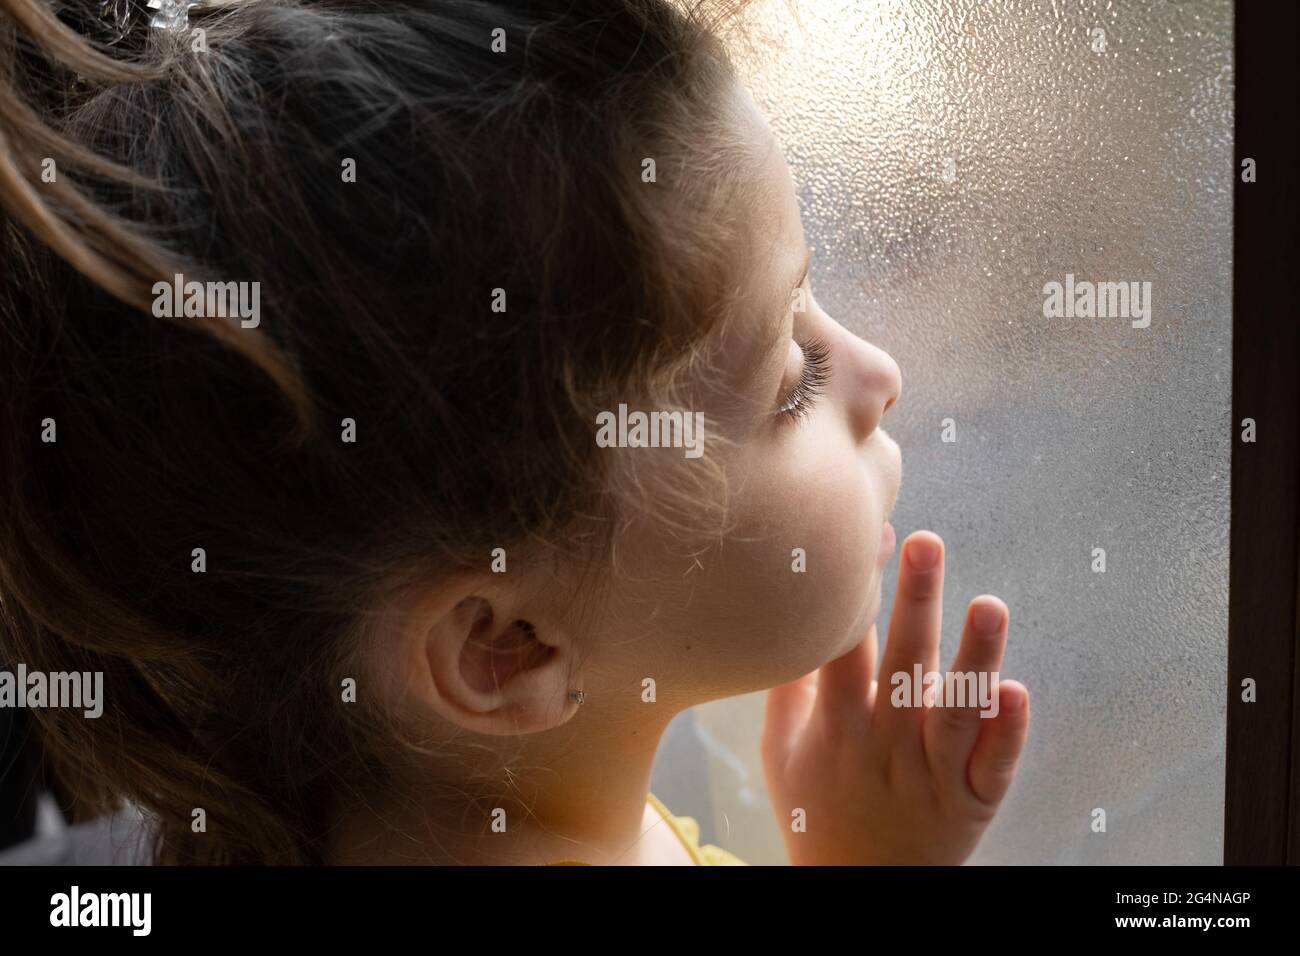 Seitenansicht Kopfbild des neugierigen niedlichen kleinen Mädchens, das neben einem durchsichtigen Glasfenster steht und nachdenklich davonschaut Stockfoto